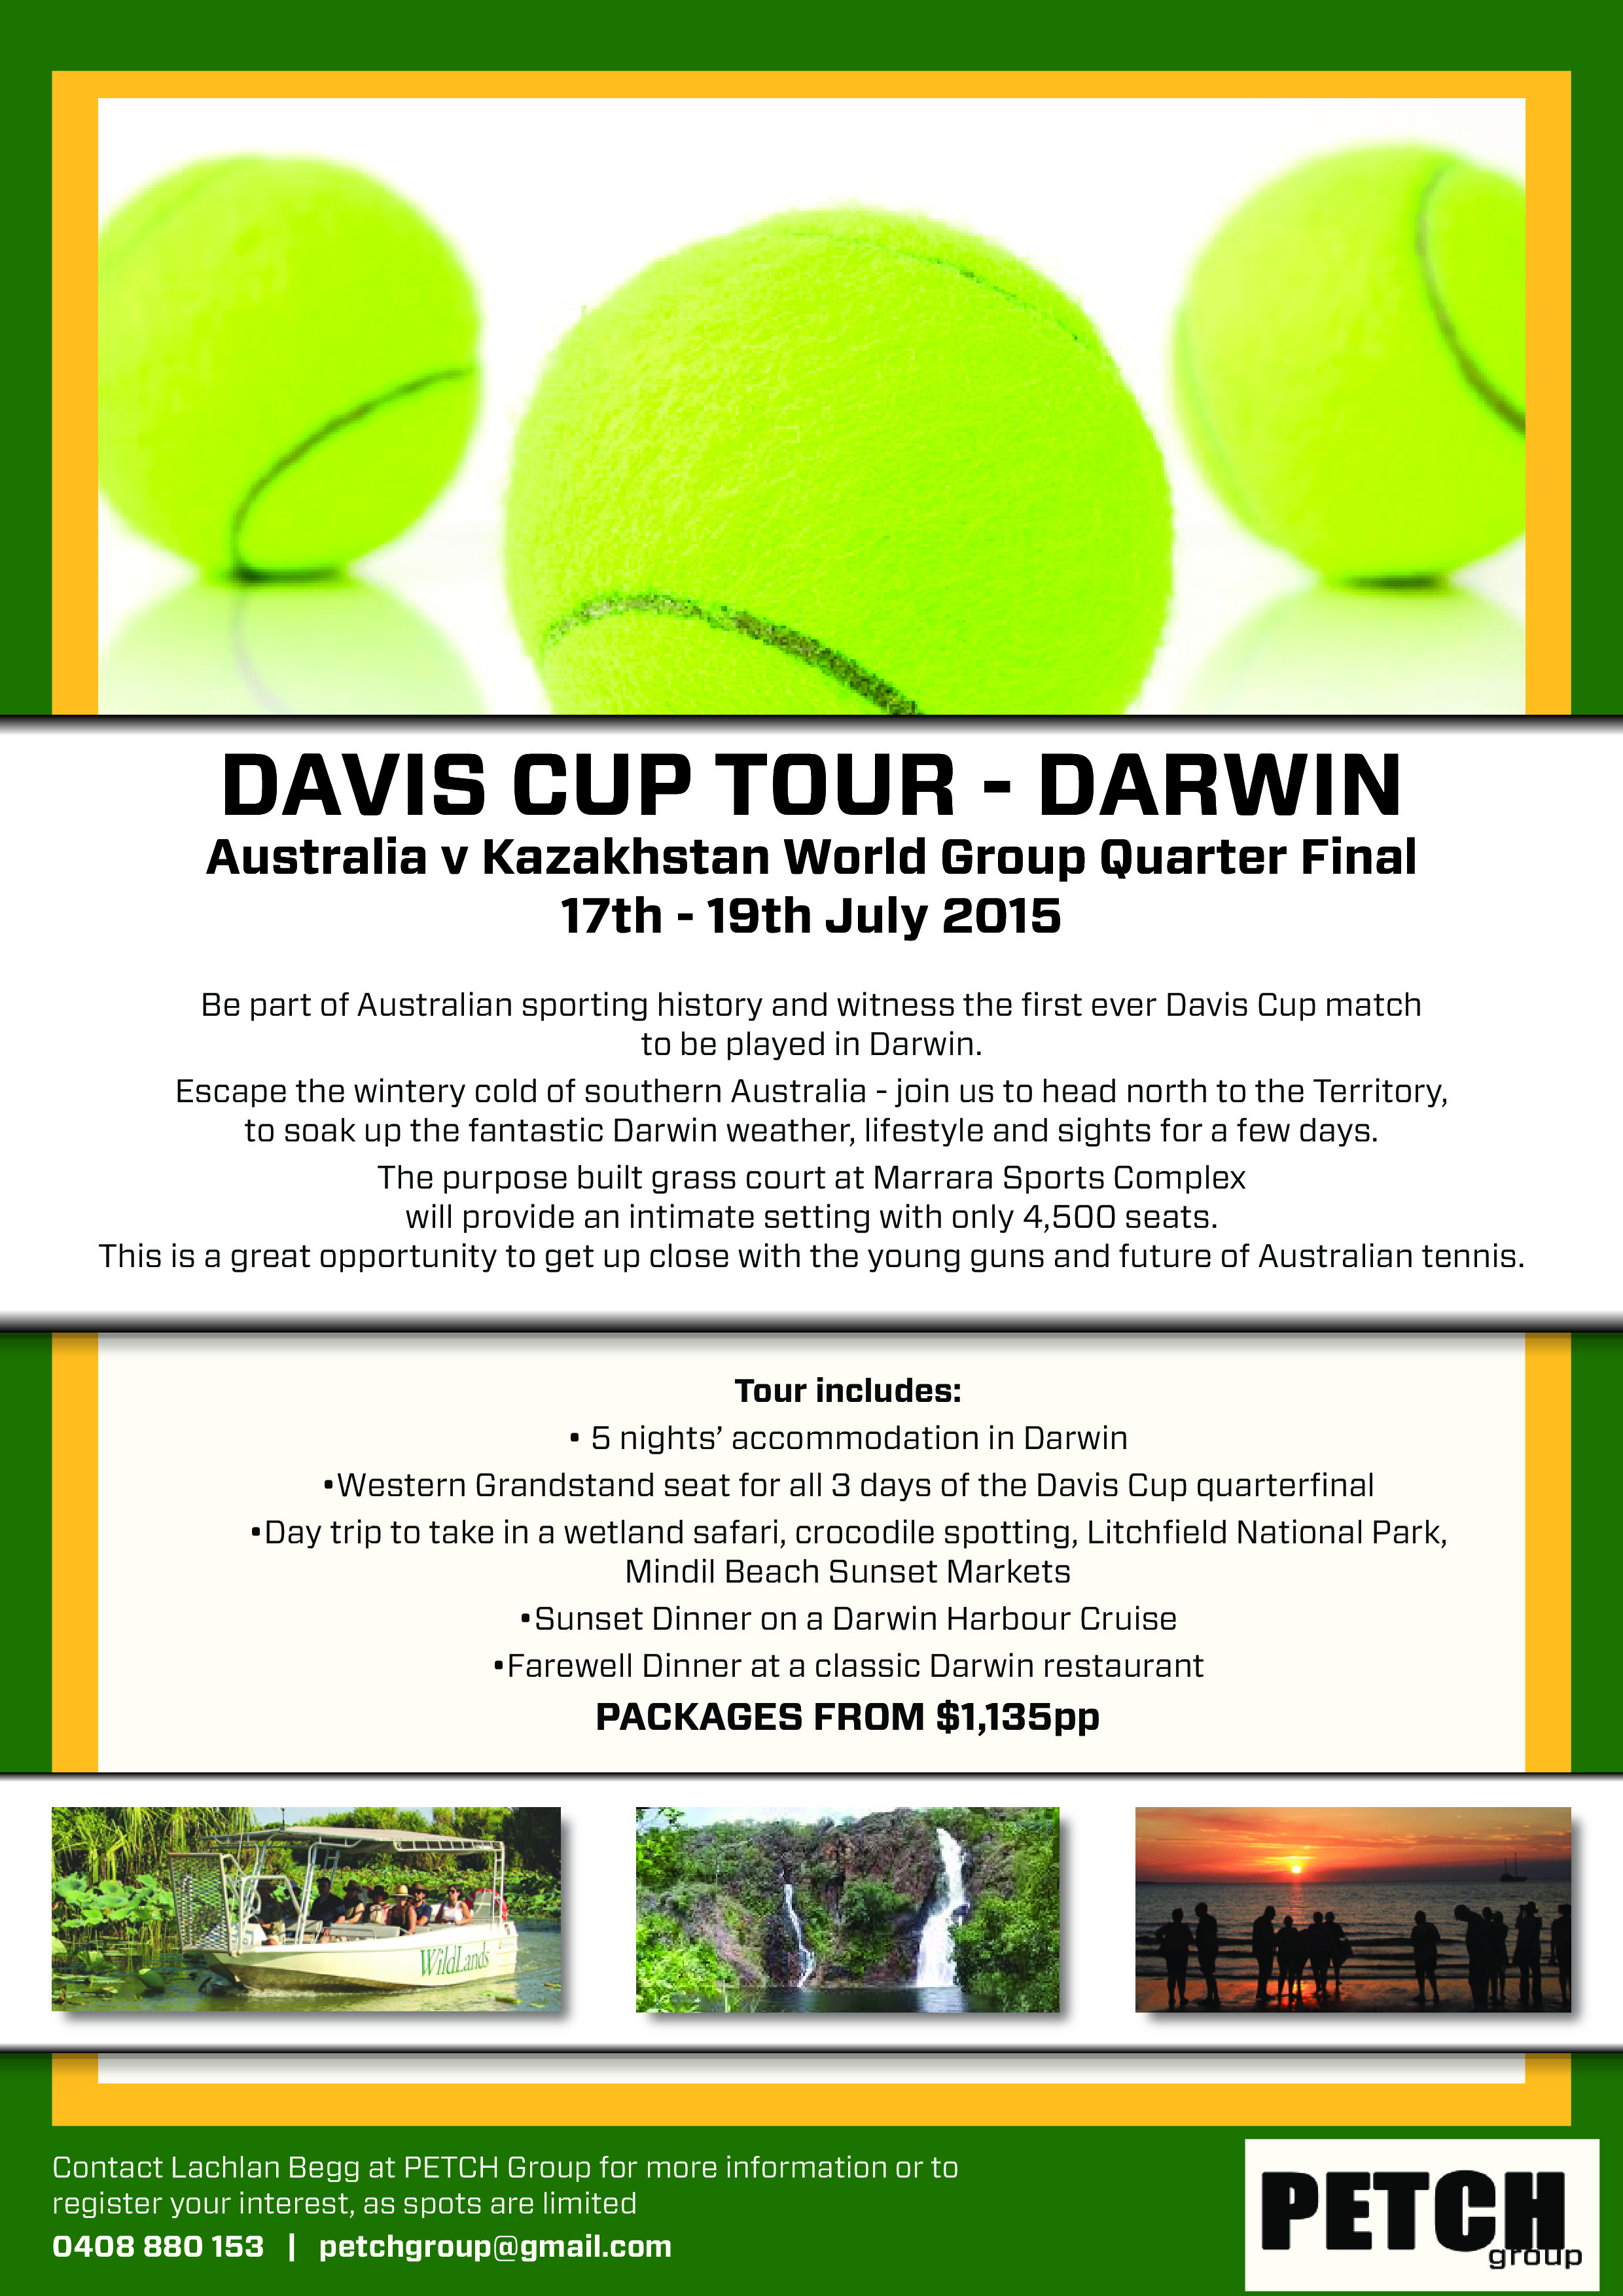 Davis Cup Tennis Tour